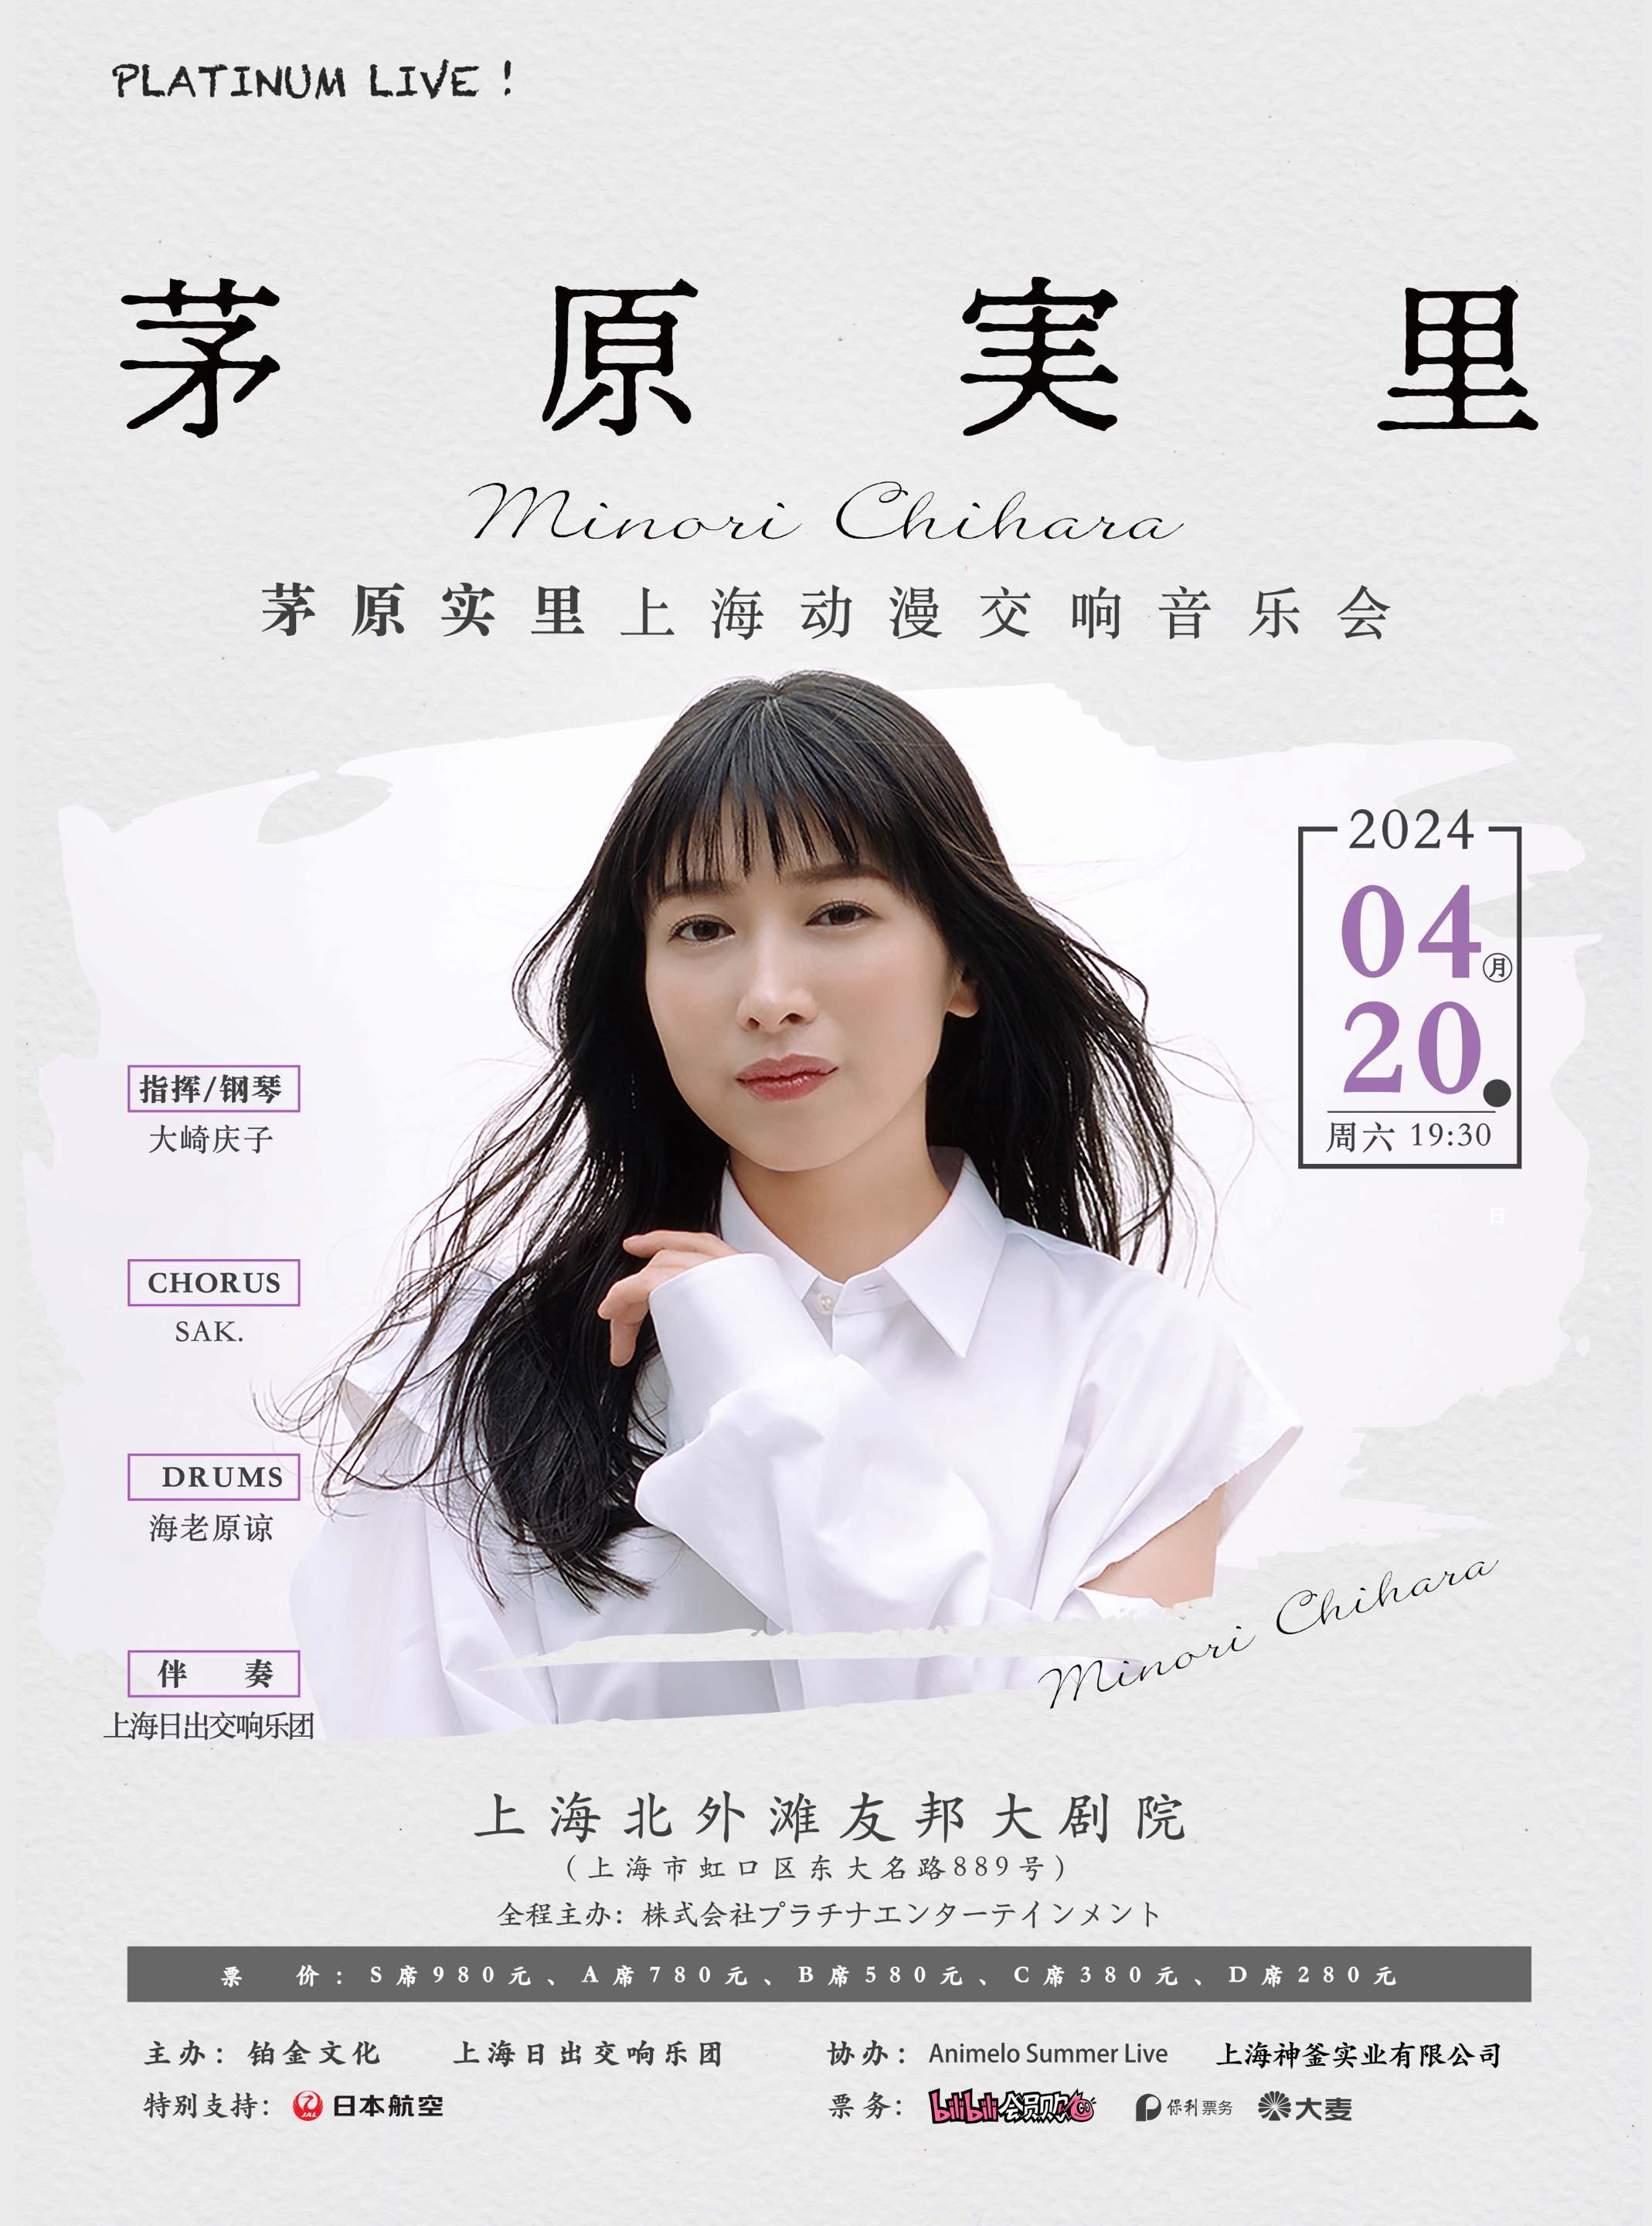 中国・上海で単独オーケストラコンサートが開催決定